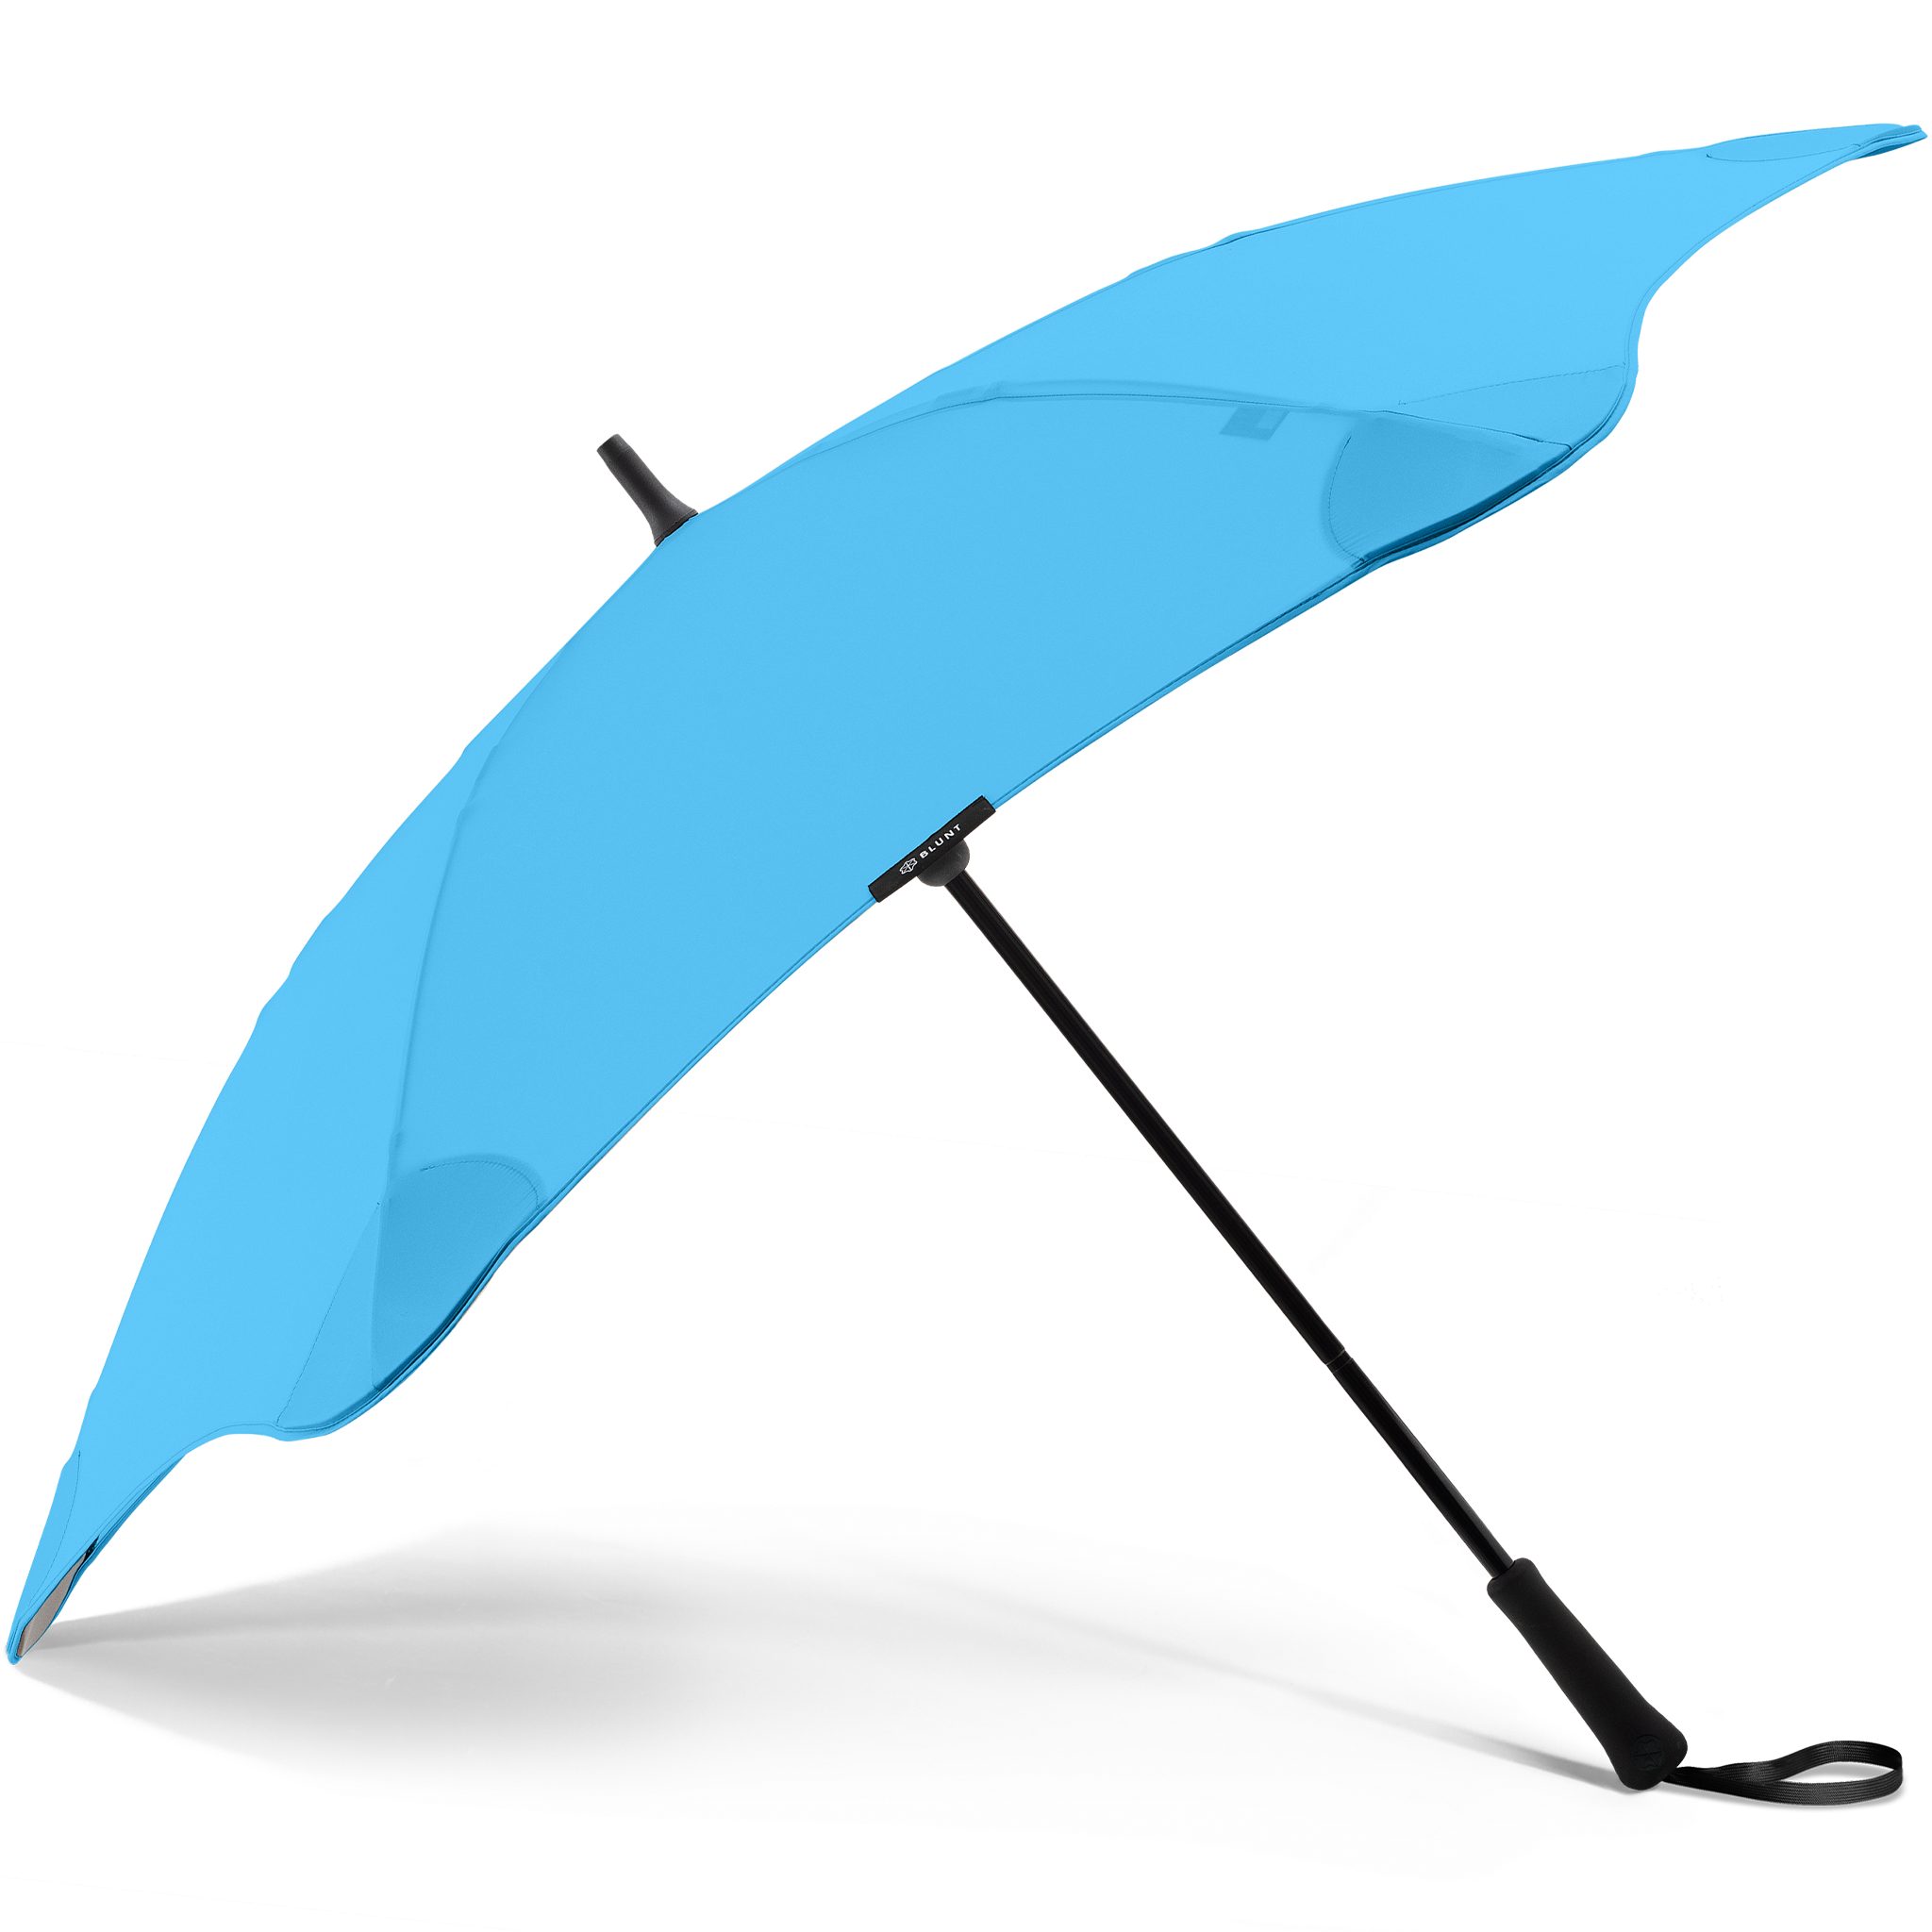 Technologie, Classic, patentierte einzigartige Blunt Silhouette Stockregenschirm herausragende